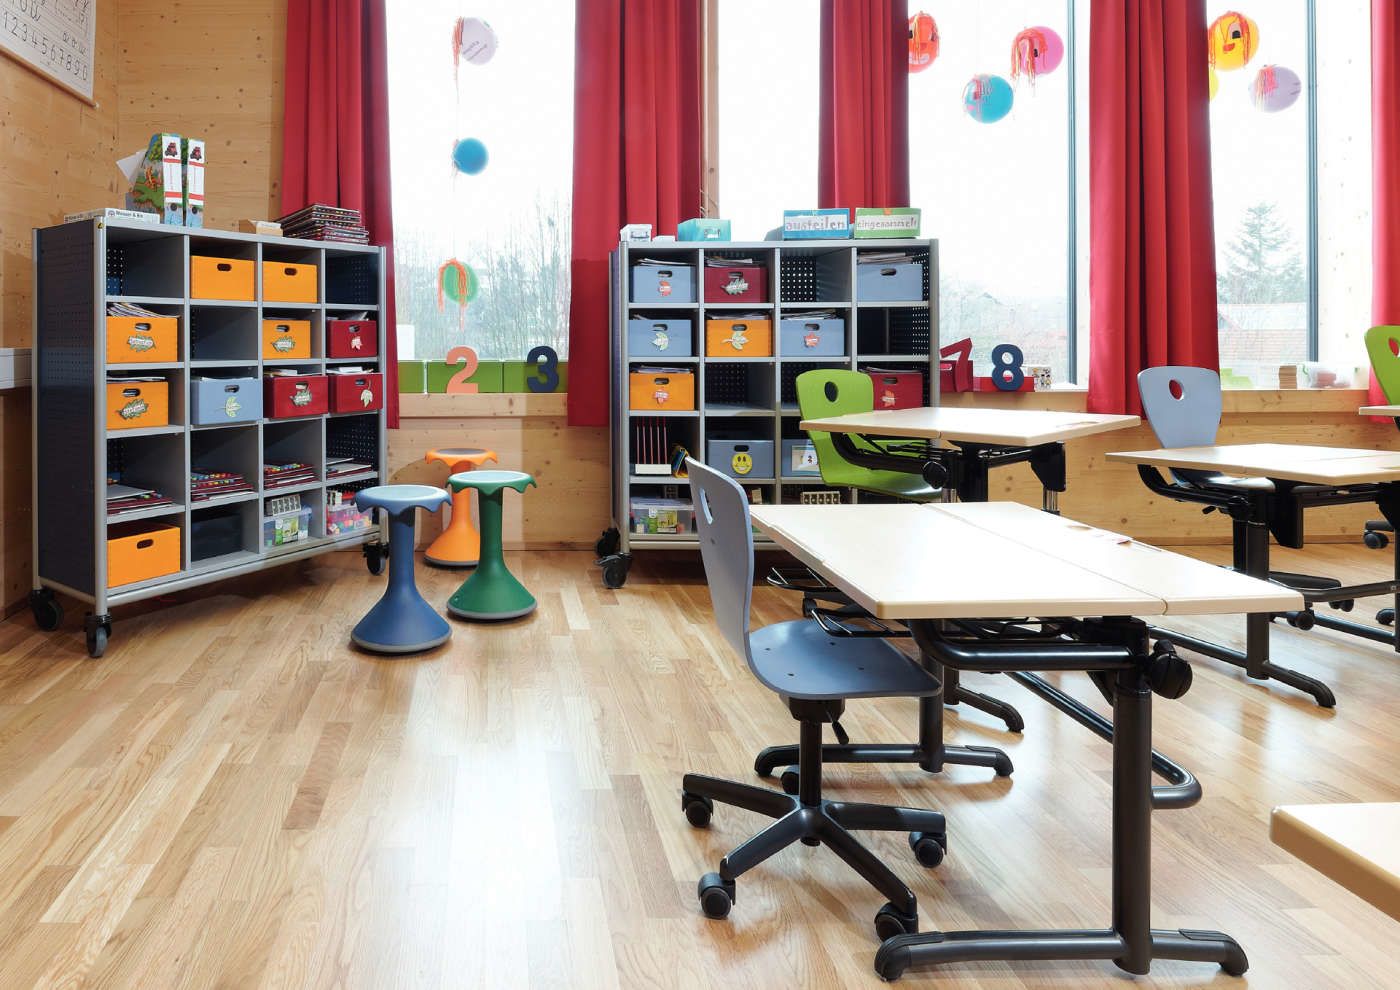 мебель в школе должна соответствовать росту и возрасту